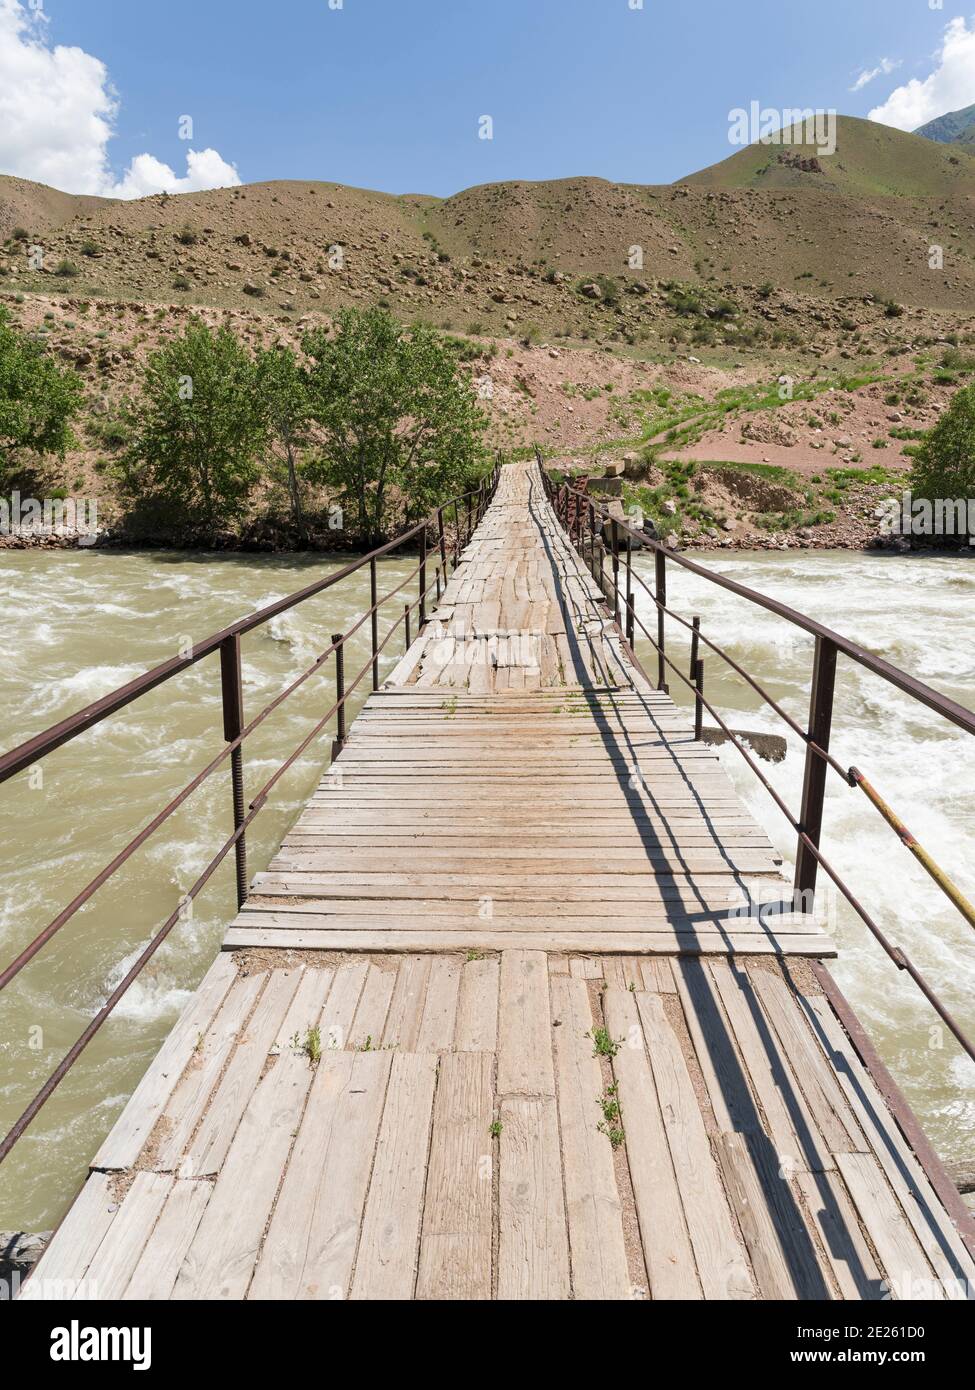 Alte, teilweise beschädigte Brücke. Tal des Flusses Suusamyr in den Tien Shan Bergen. Asien, Zentralasien, Kirgisistan Stockfoto